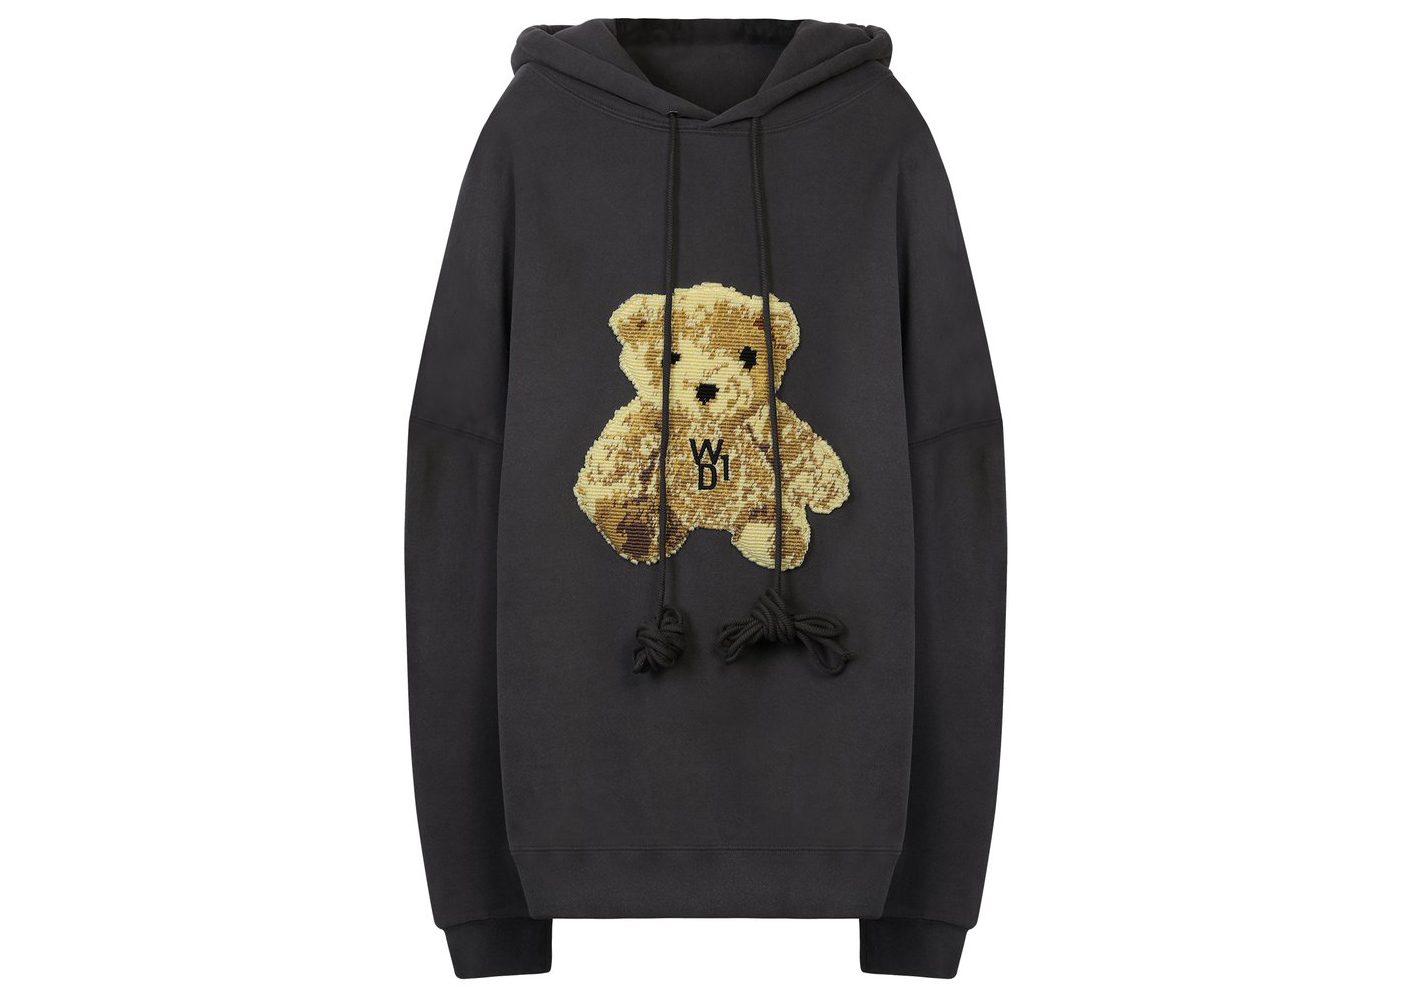 22market Teddy hoodie